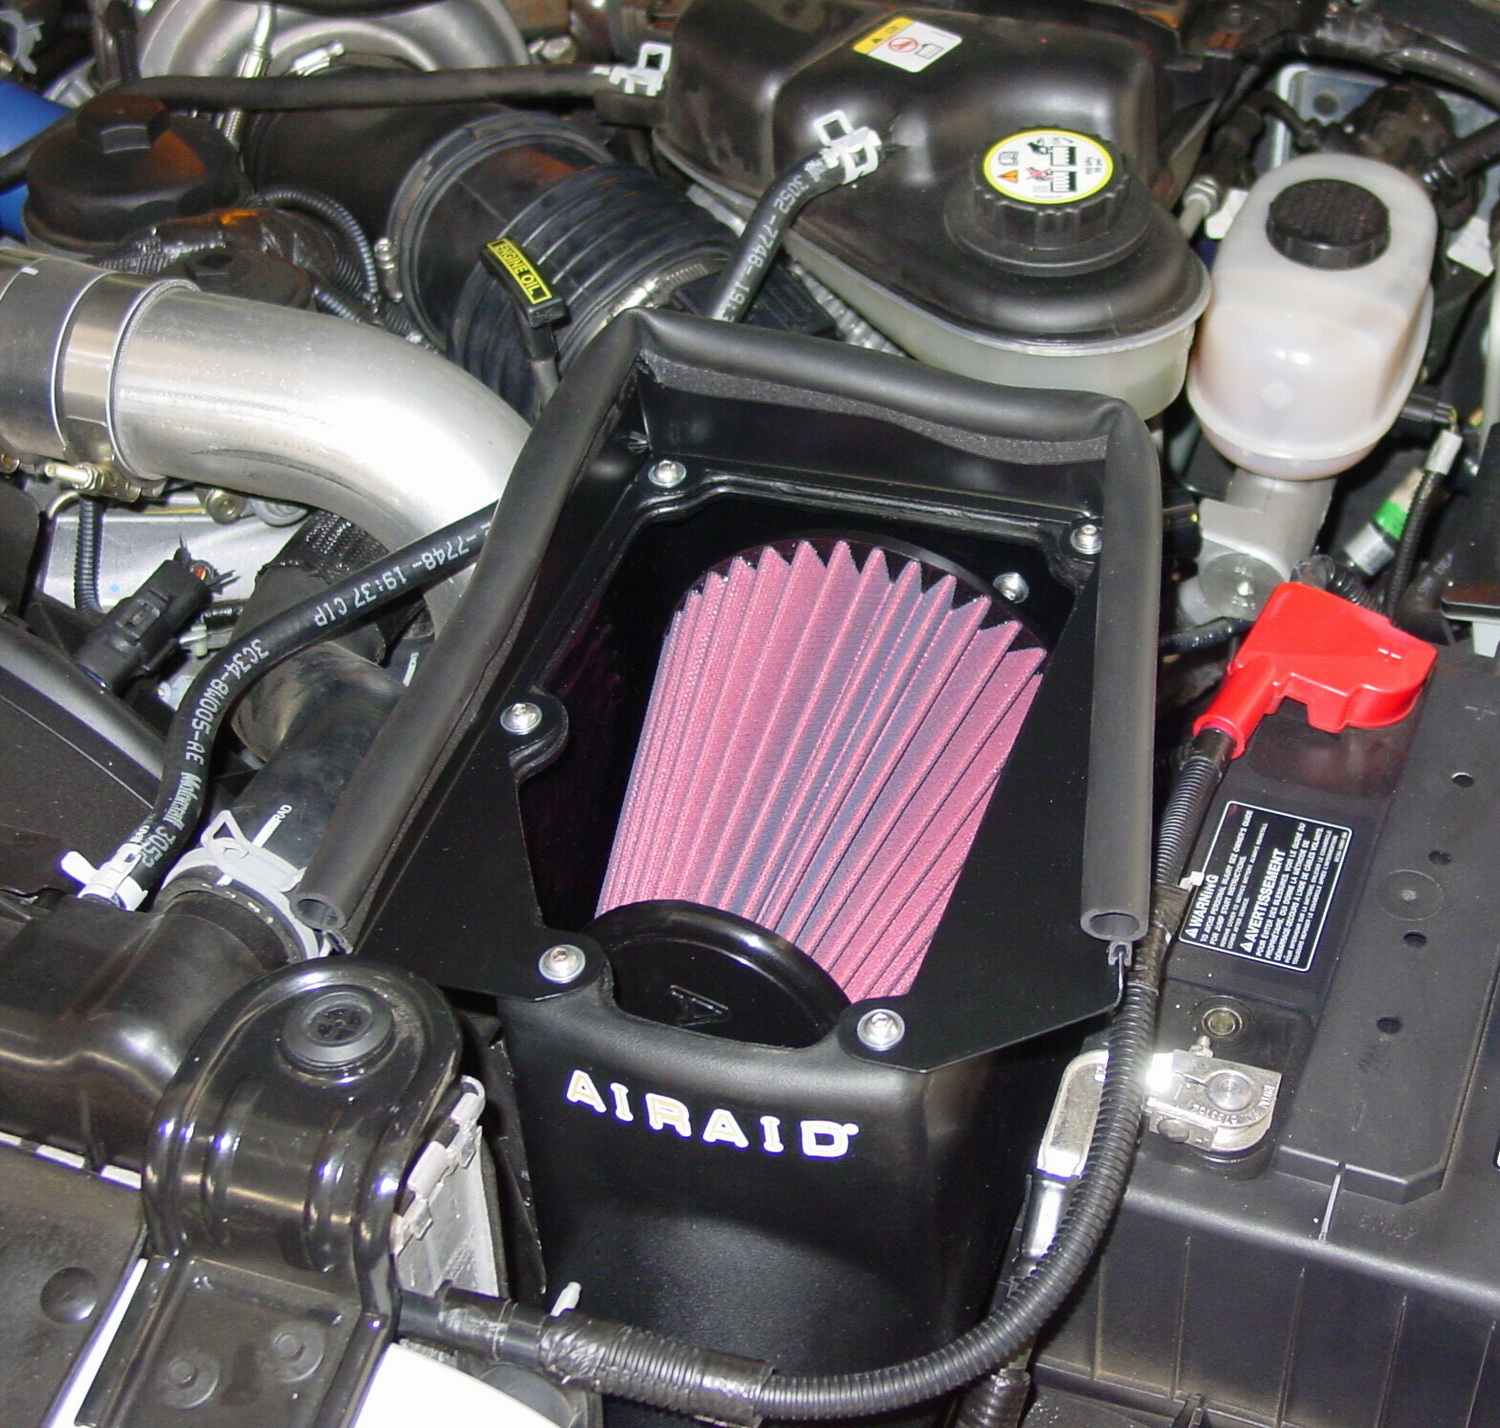 Airaid Airaid 250-305 AIRAID MXP Series Cold Air Box Intake System Fits 14-15 Camaro